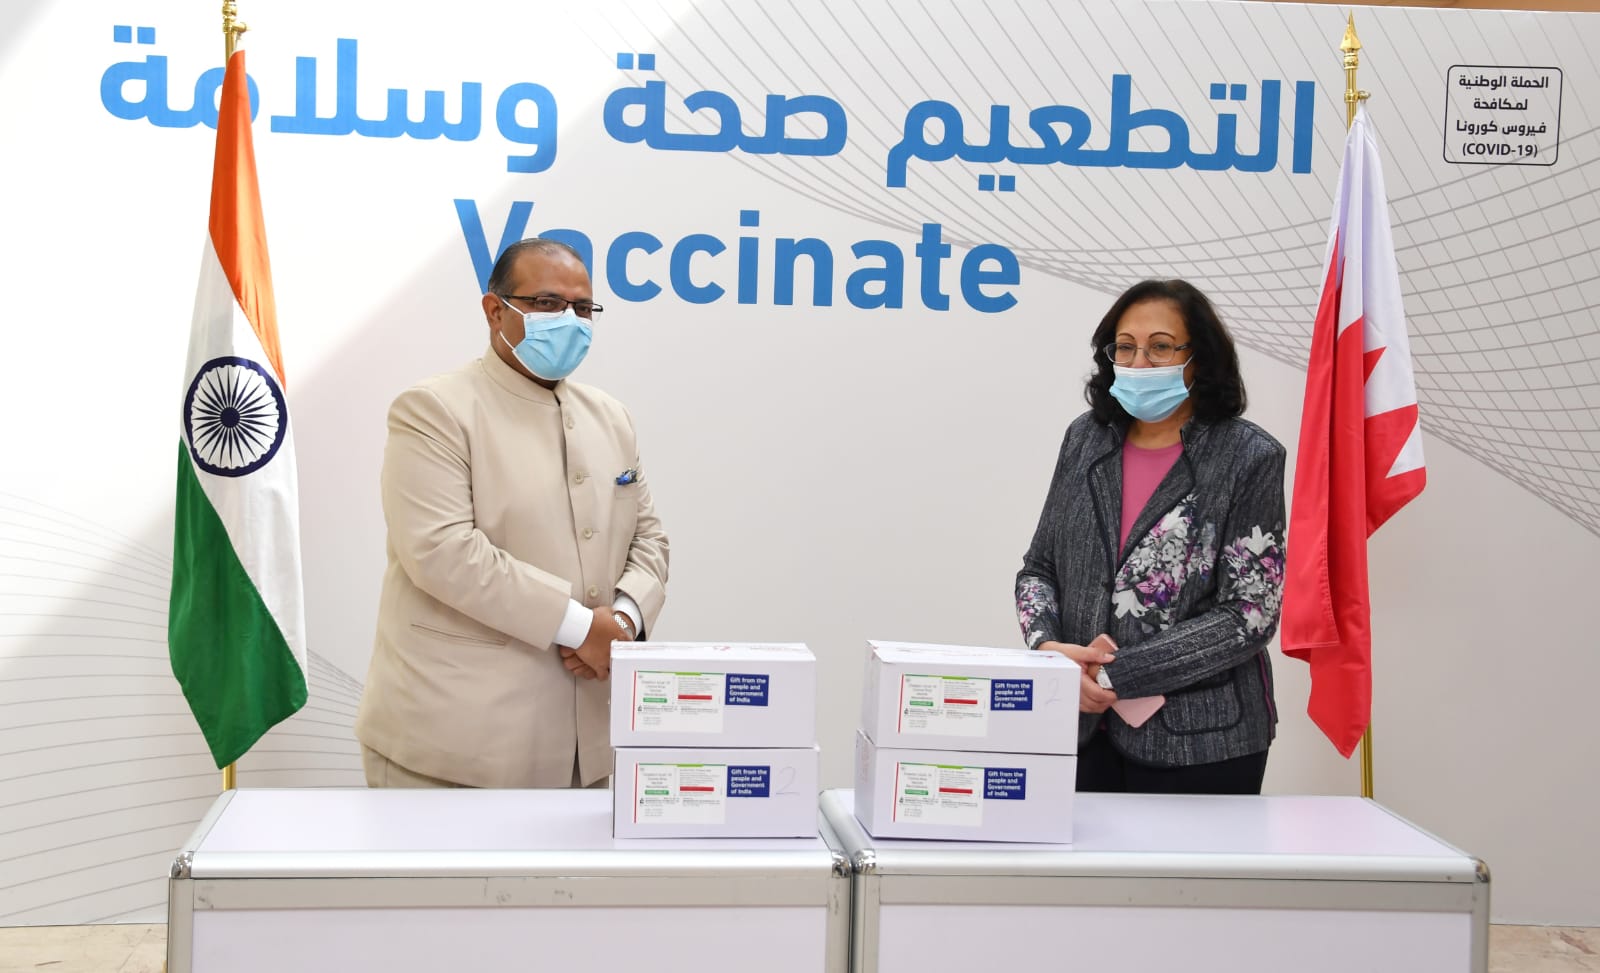 البحرين تتسلم دفعة من لقاح (كوفيشيلد - أسترازنيكا) المضاد لفيروس كورونا من جمهورية الهند وتفتح باب التسجيل للتطعيم